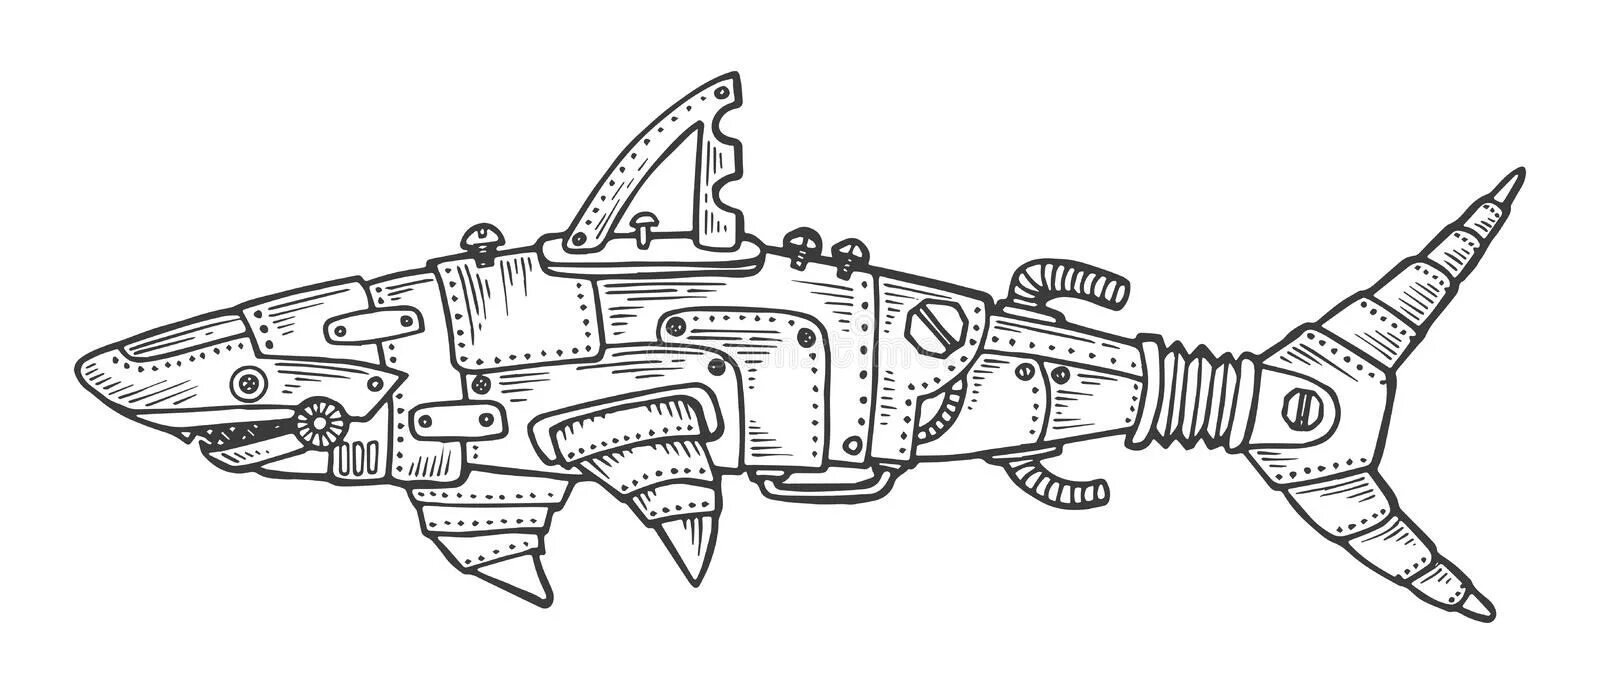 Robot shark #2